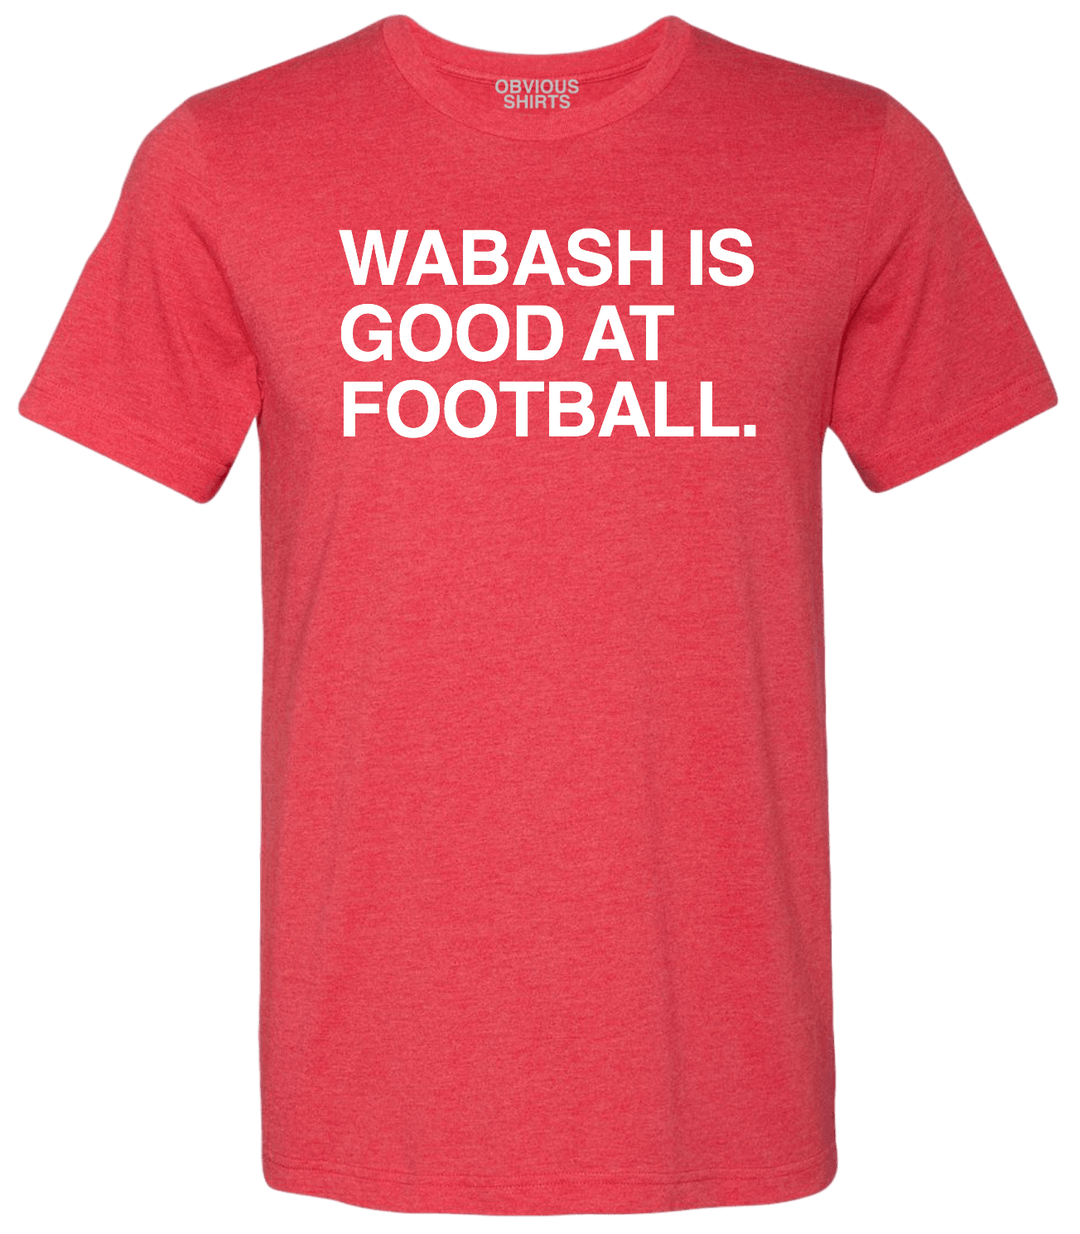 WABASH IS GOOD AT FOOTBALL. - OBVIOUS SHIRTS.